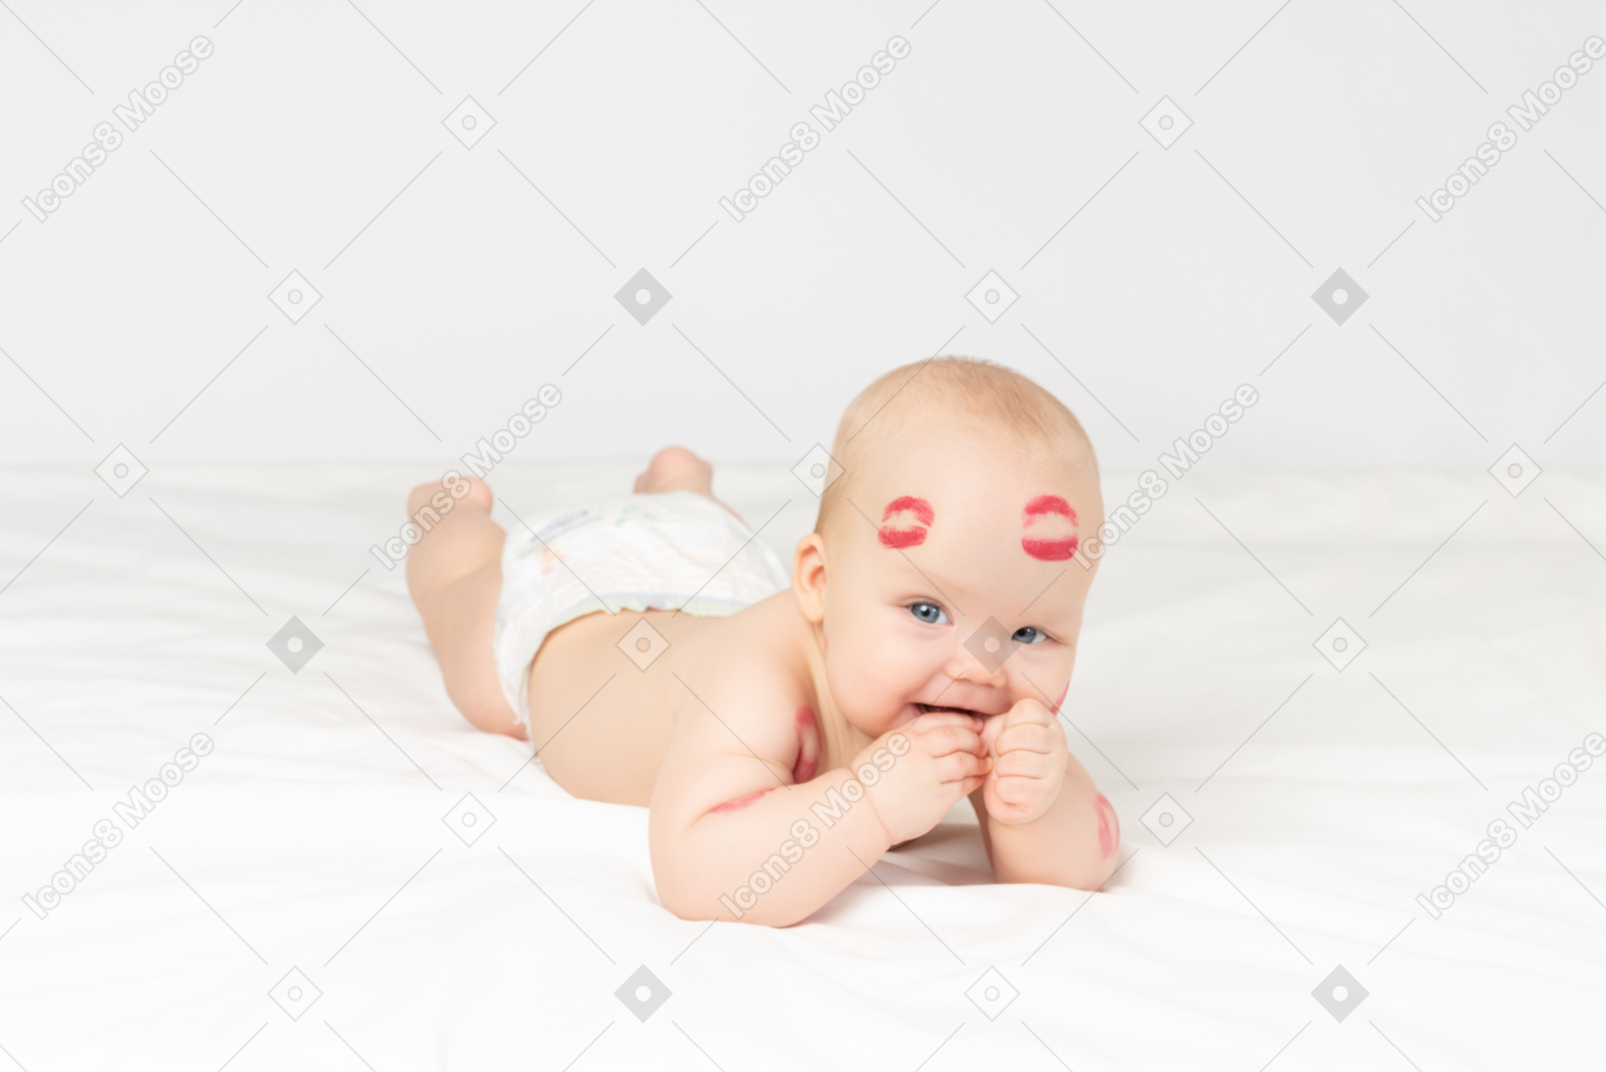 Bambina sorridente con baci di rossetto rosso